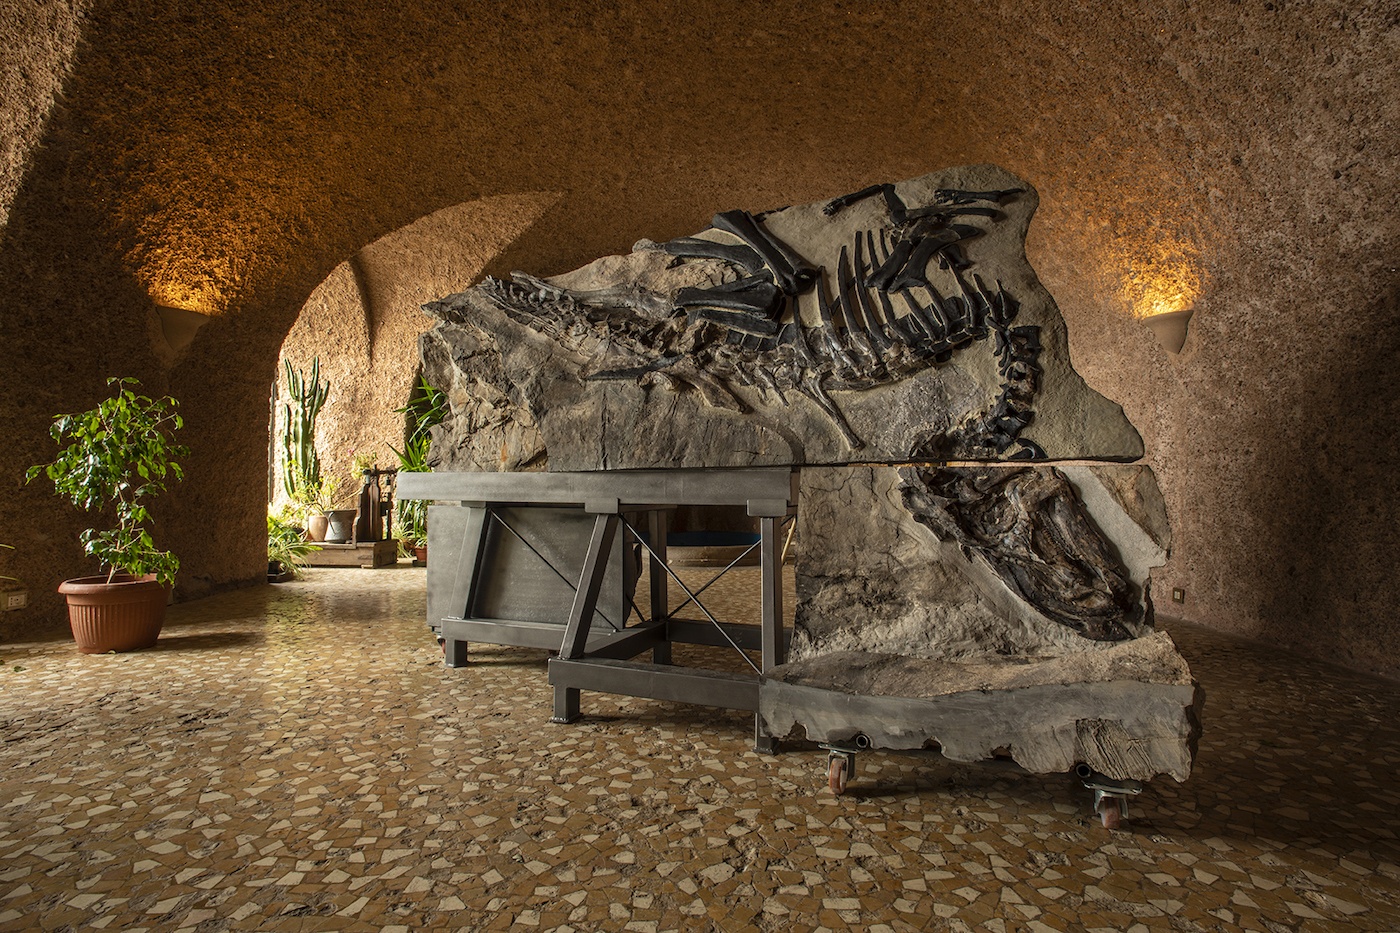 Scopri di più sull'articolo Alla scoperta del dinosauro Bruno al castello di Duino, sabato 22 e domenica 23 febbraio